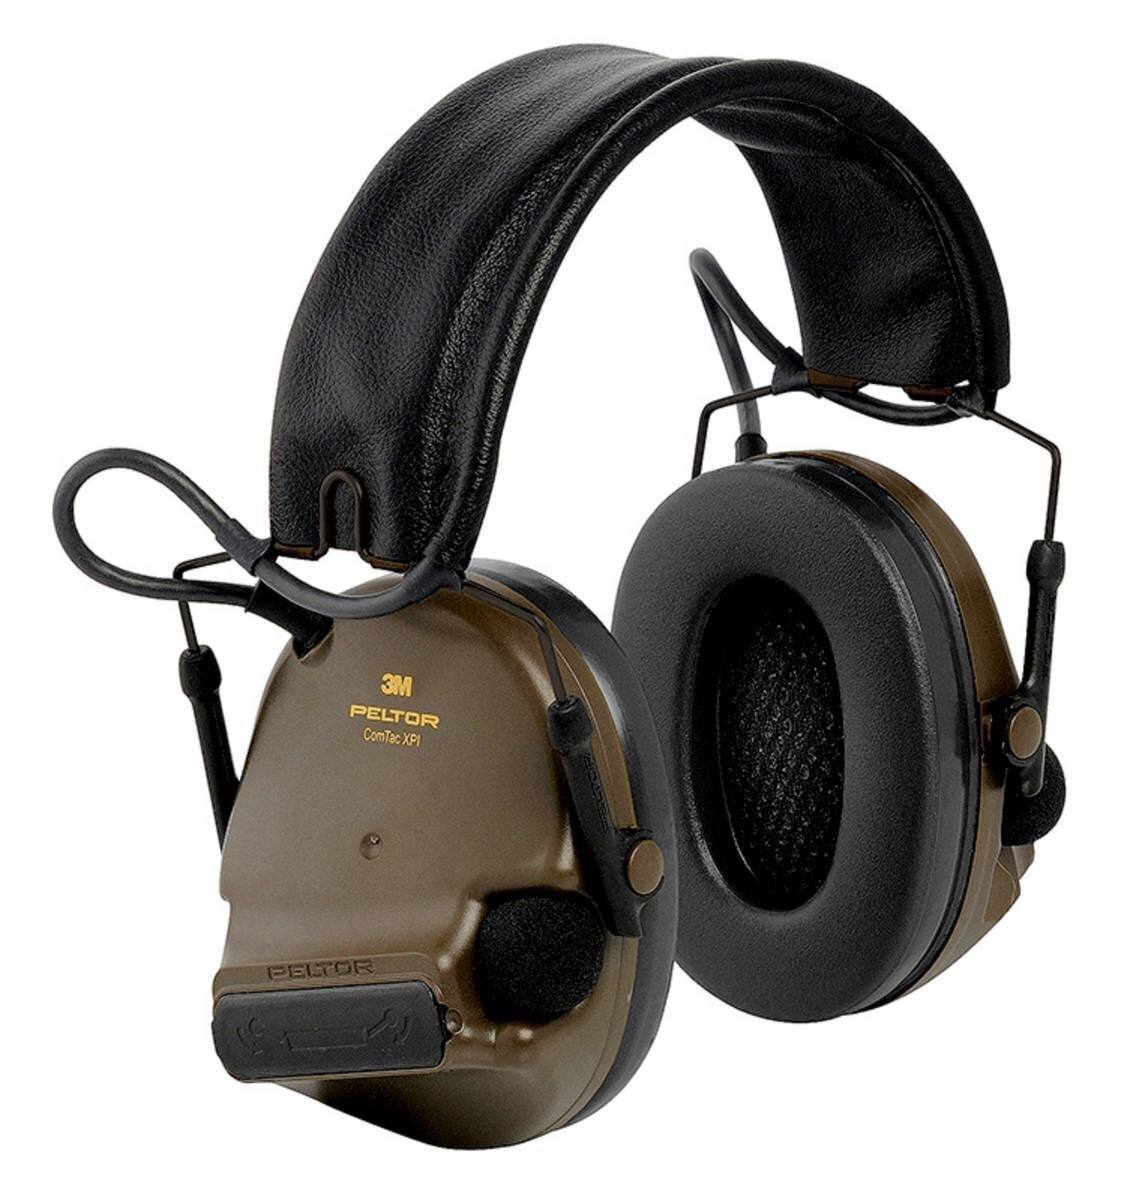 3M PELTOR ComTac XPI casque d'écoute tactique CTXPI02, pliable, sur la tête, vert, MT20H682FB-02